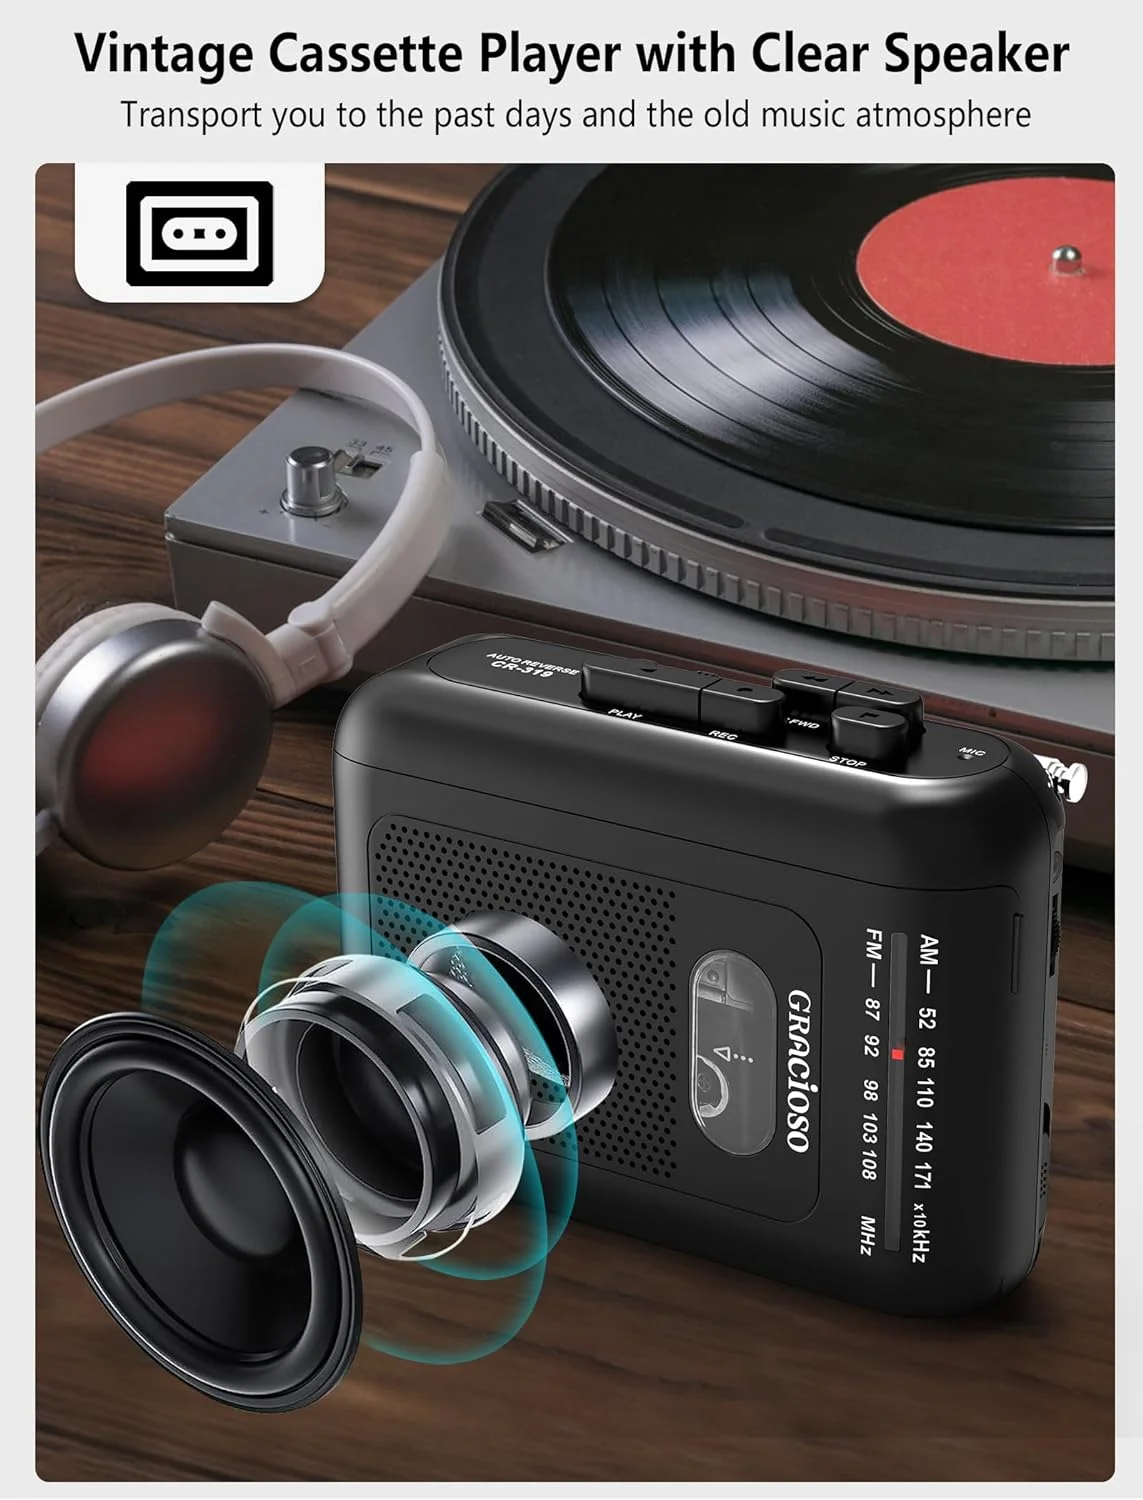 Auto Reverse Walkman Cassette Player Review